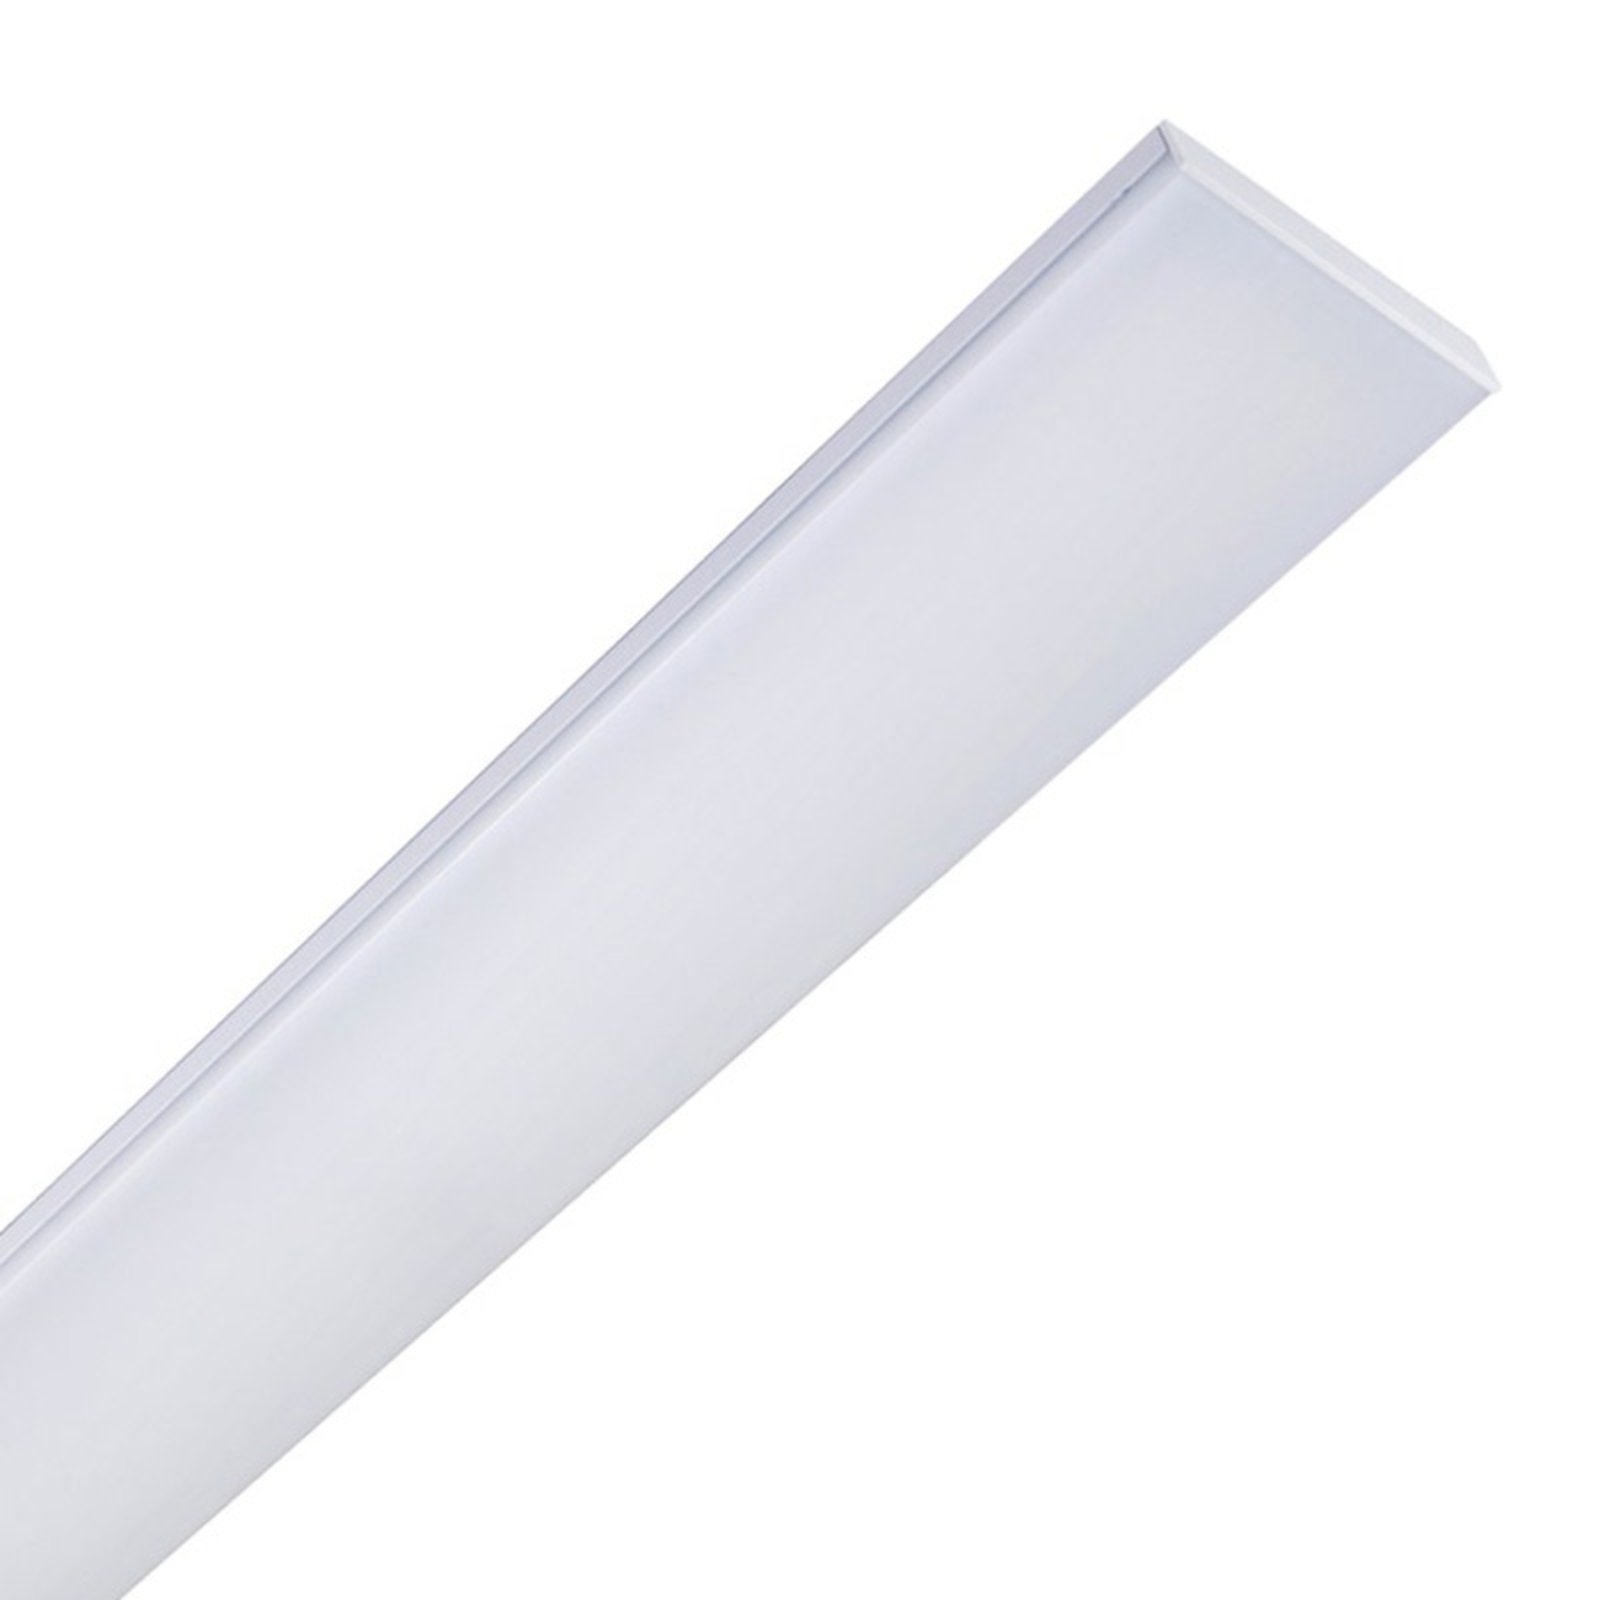 Plafonnier LED Planus 60 avec LED blanc neutre